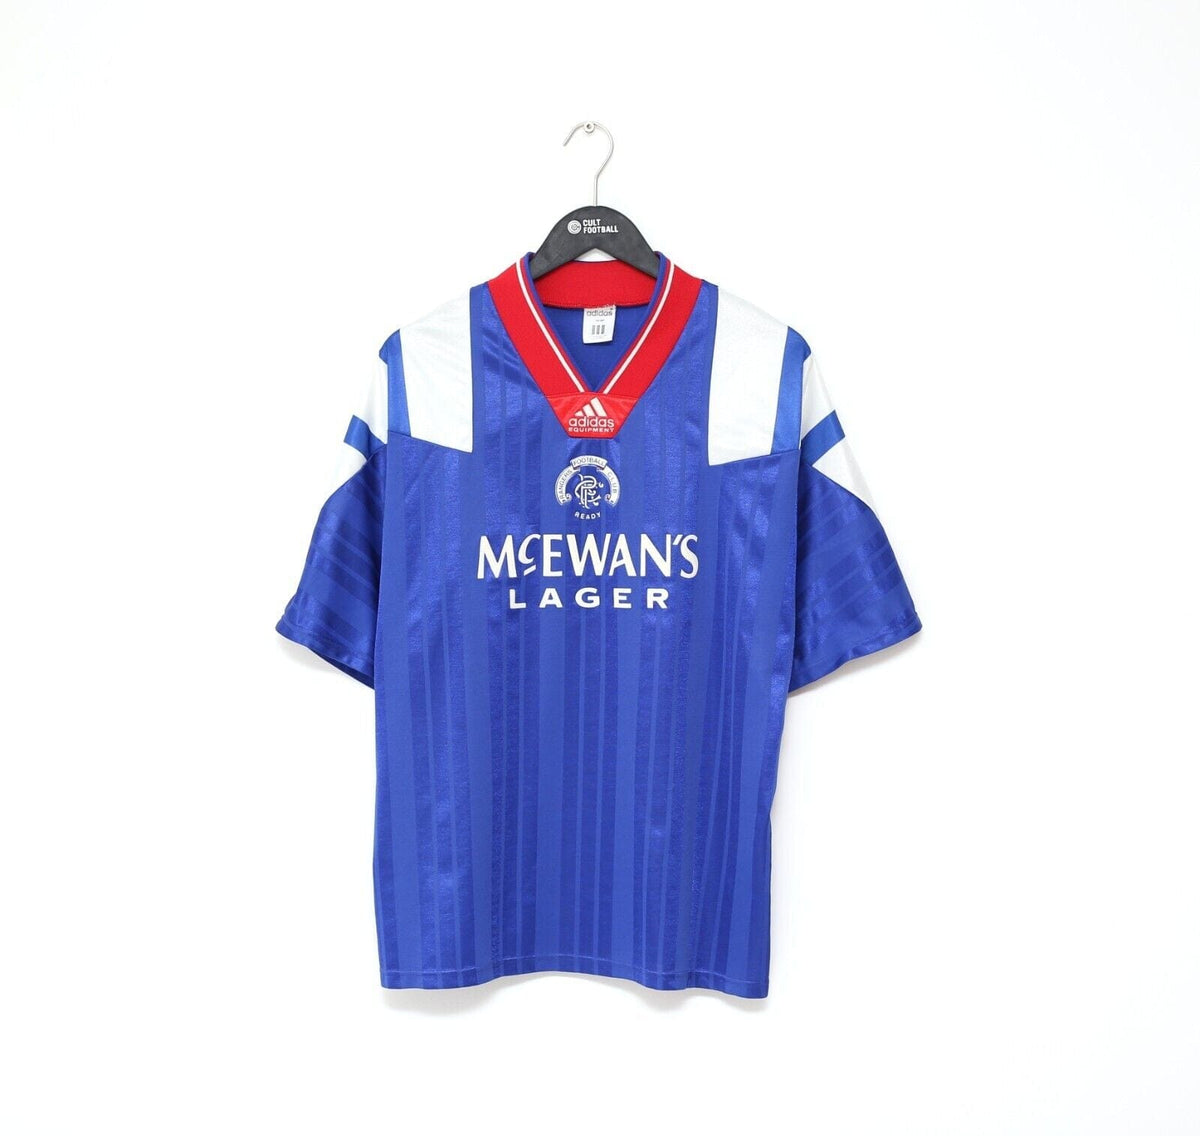 Rangers 1992 1994 adidas football shirt Soccer Jersey 42'' - 44